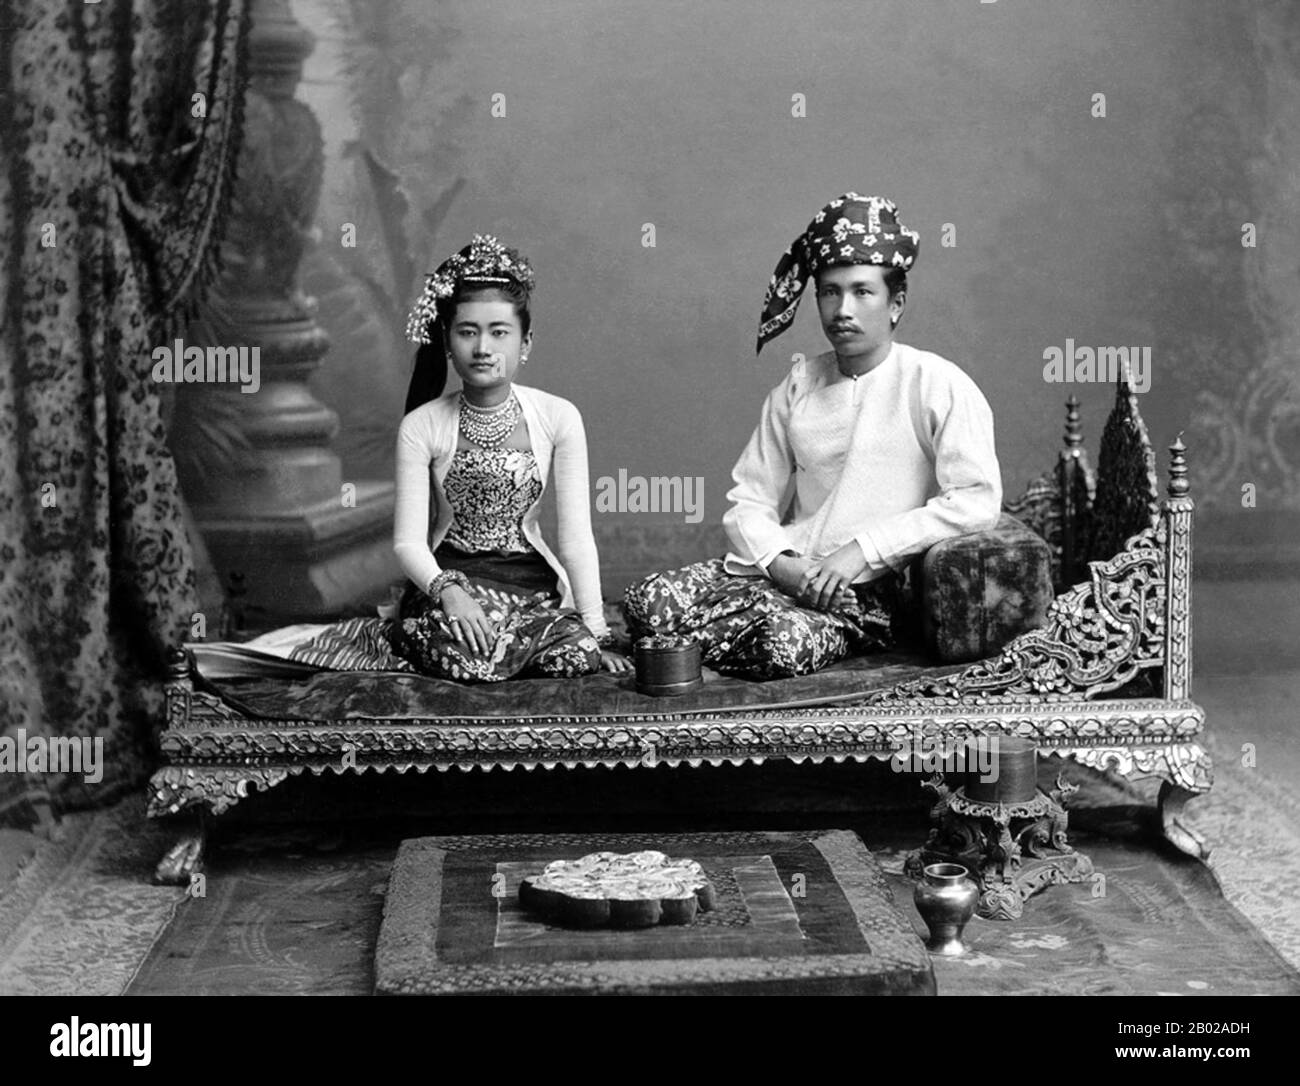 Philip Adolphe Klier war ein deutscher Fotograf, der vor allem für seine Fotos vom kolonialen Birma/Myanmar bekannt ist. Bis 1871 war er professioneller Fotograf in Moulmein, Birma. Zu seinem Geschäft gehörte die Tätigkeit als Optiker, Uhrmacher und Juwelier sowie der Betrieb des unter dem Namen Murken & Klier bekannten Unternehmens. Um das Jahr 1880 zog Klier nach Rangun, Birmas größter Stadt. Im zuge der Eroberung des Irrawaddy-Deltas durch die Briten im Jahr 1852 war Rangun zum Zentrum der indo-britischen Macht geworden. Klier arbeitete bis 1885 selbstständig, als er eine Partnerschaft mit J. Jackson eingegangen war. Bis 1890 wurde die Partnerschaft aufgelöst an Stockfoto